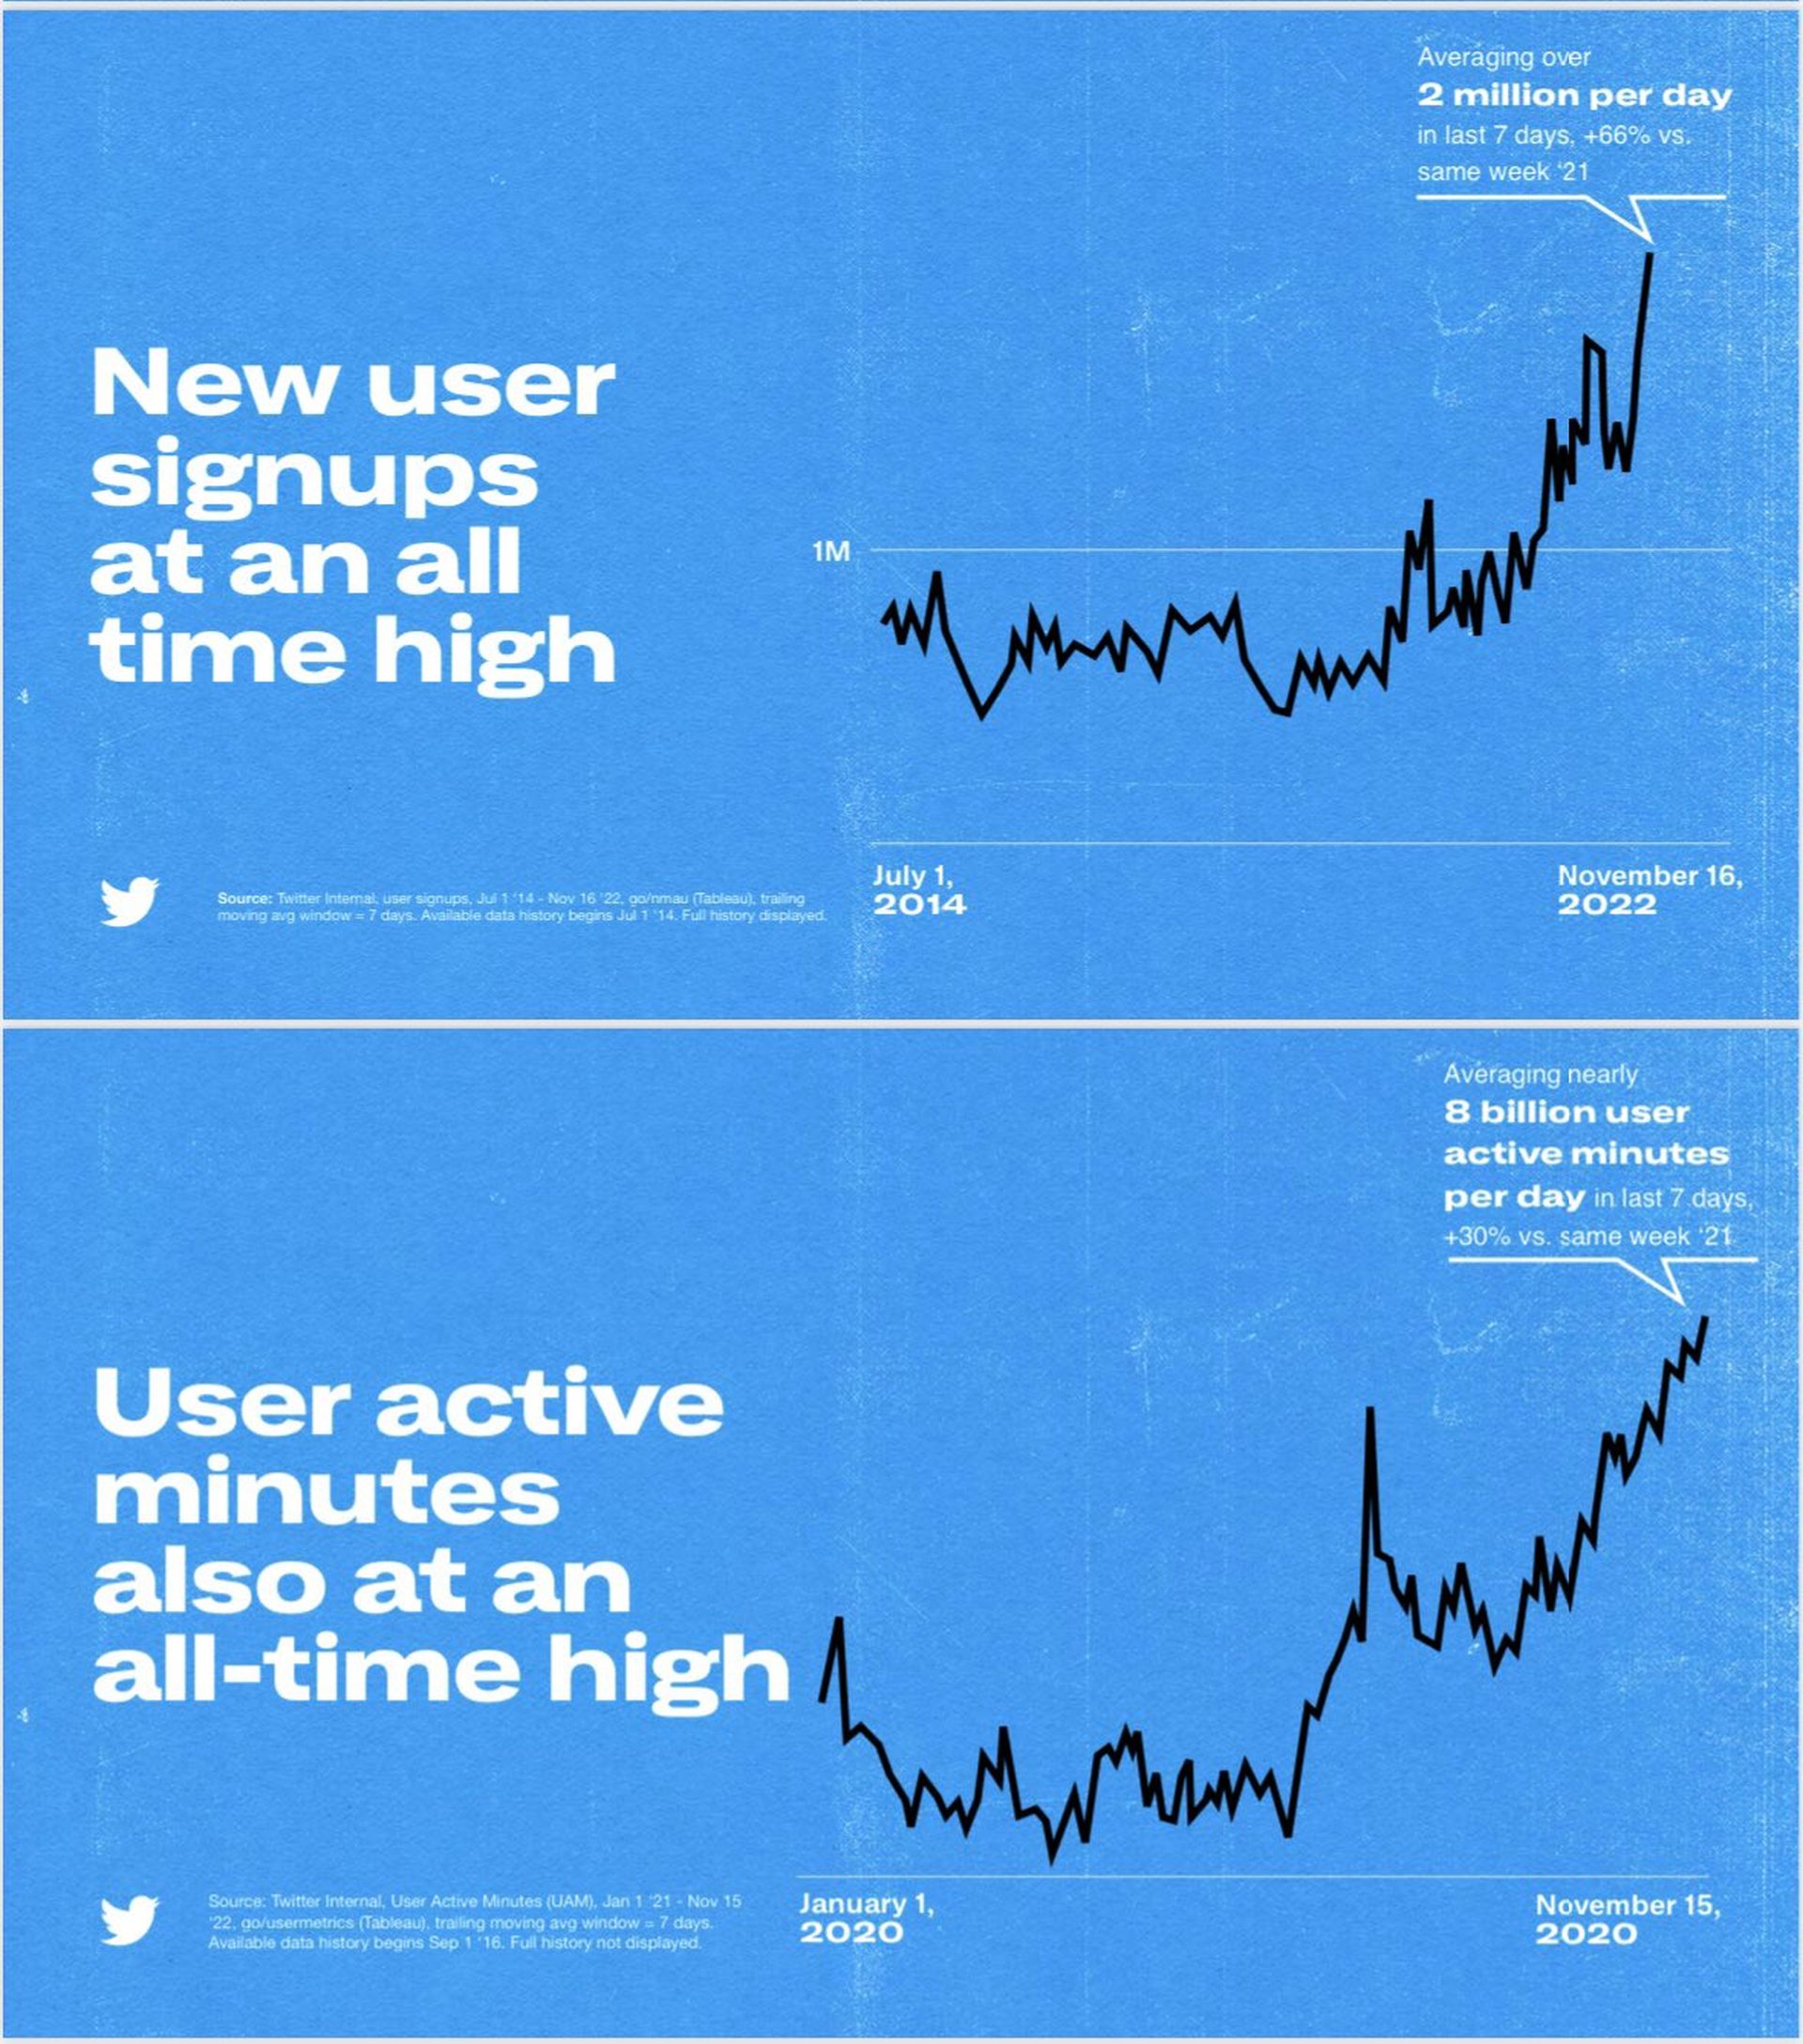 Secondo Musk, Twitter ha raggiunto il massimo storico di nuovi utenti e minuti attivi degli utenti